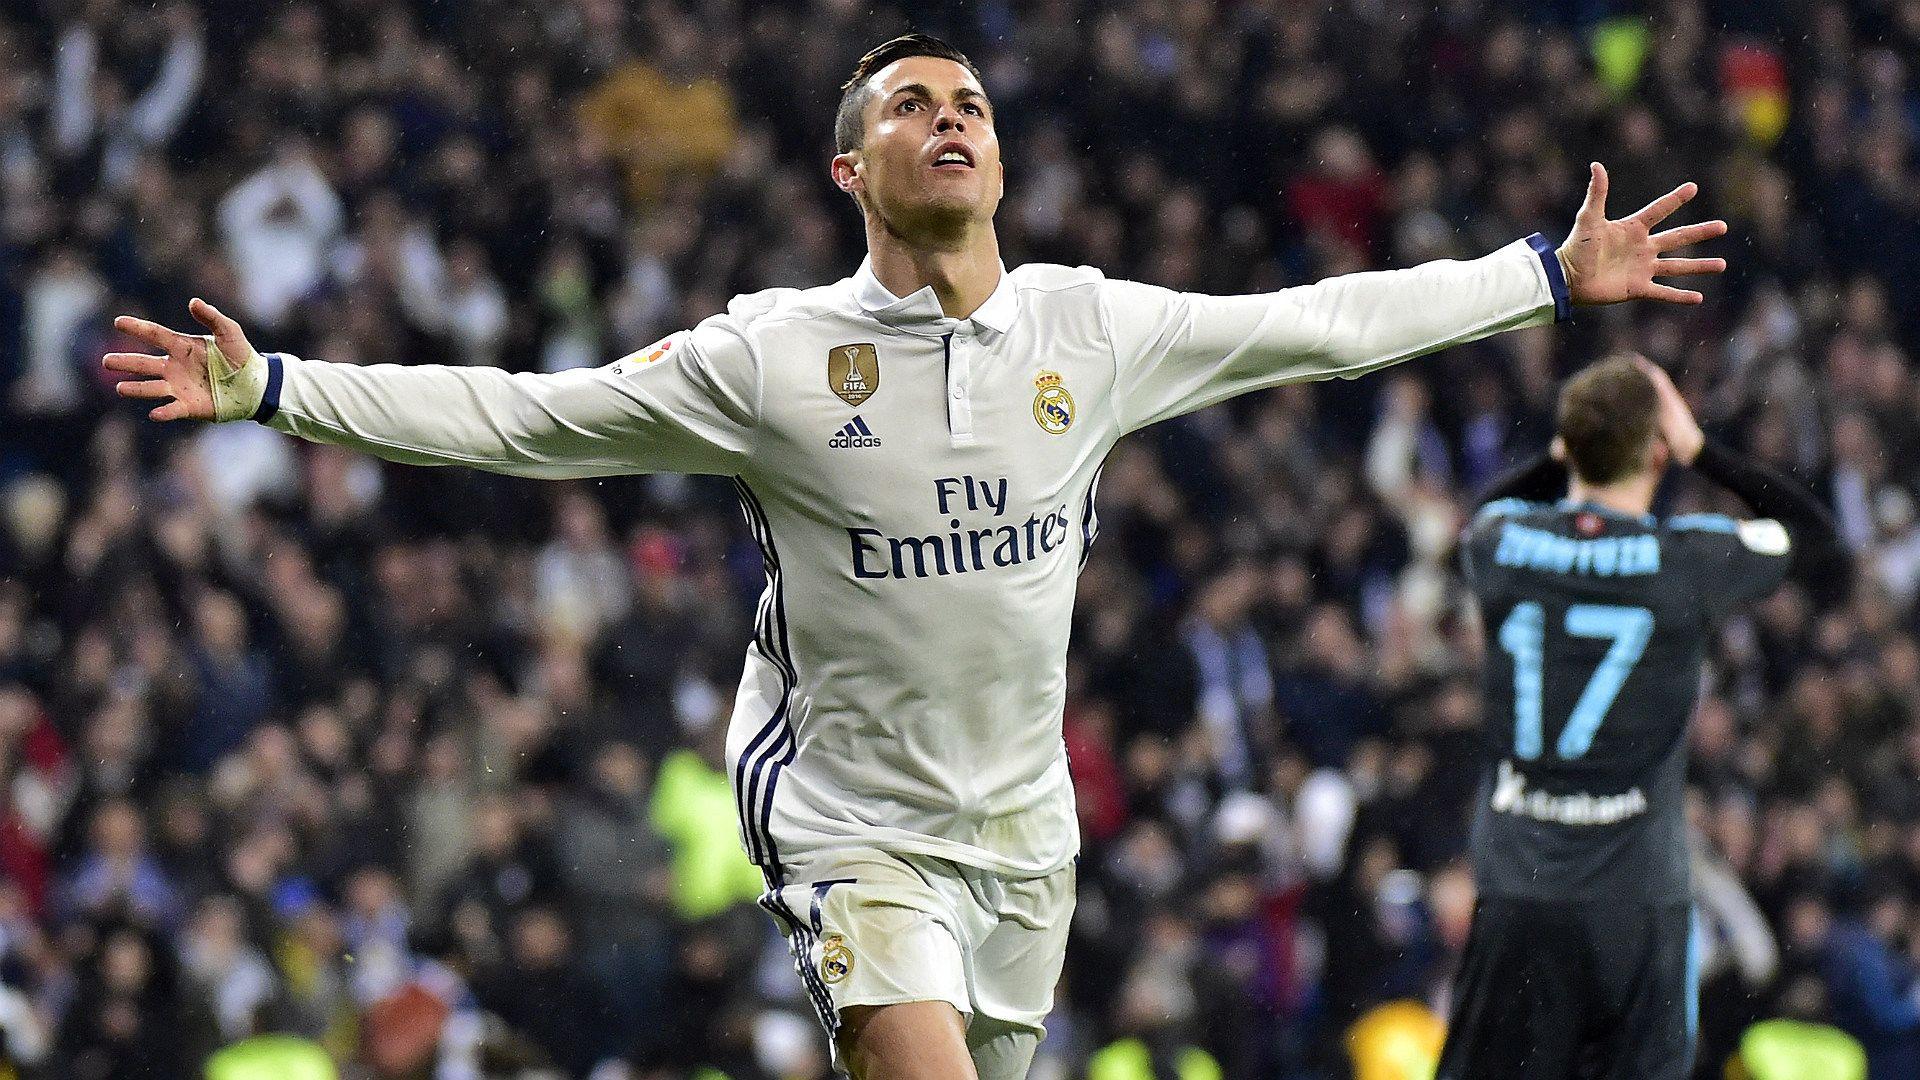 La Liga: You cannot boo Madrid's Ronaldo